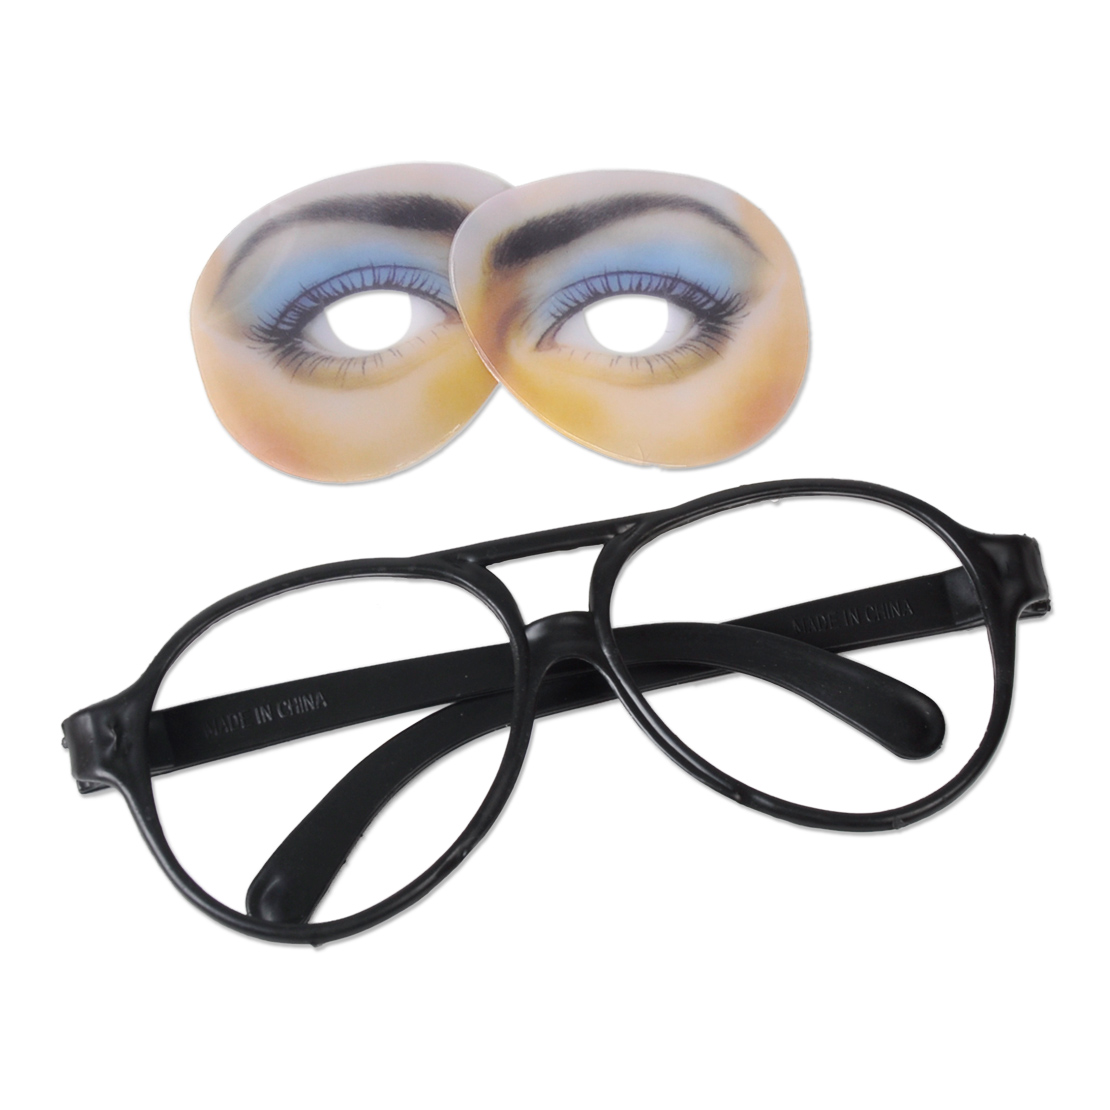 Unisex Funny Glasses Fake Novelty Gag Prank Eye Ball Joke Toy Halloween Party Ebay 7118